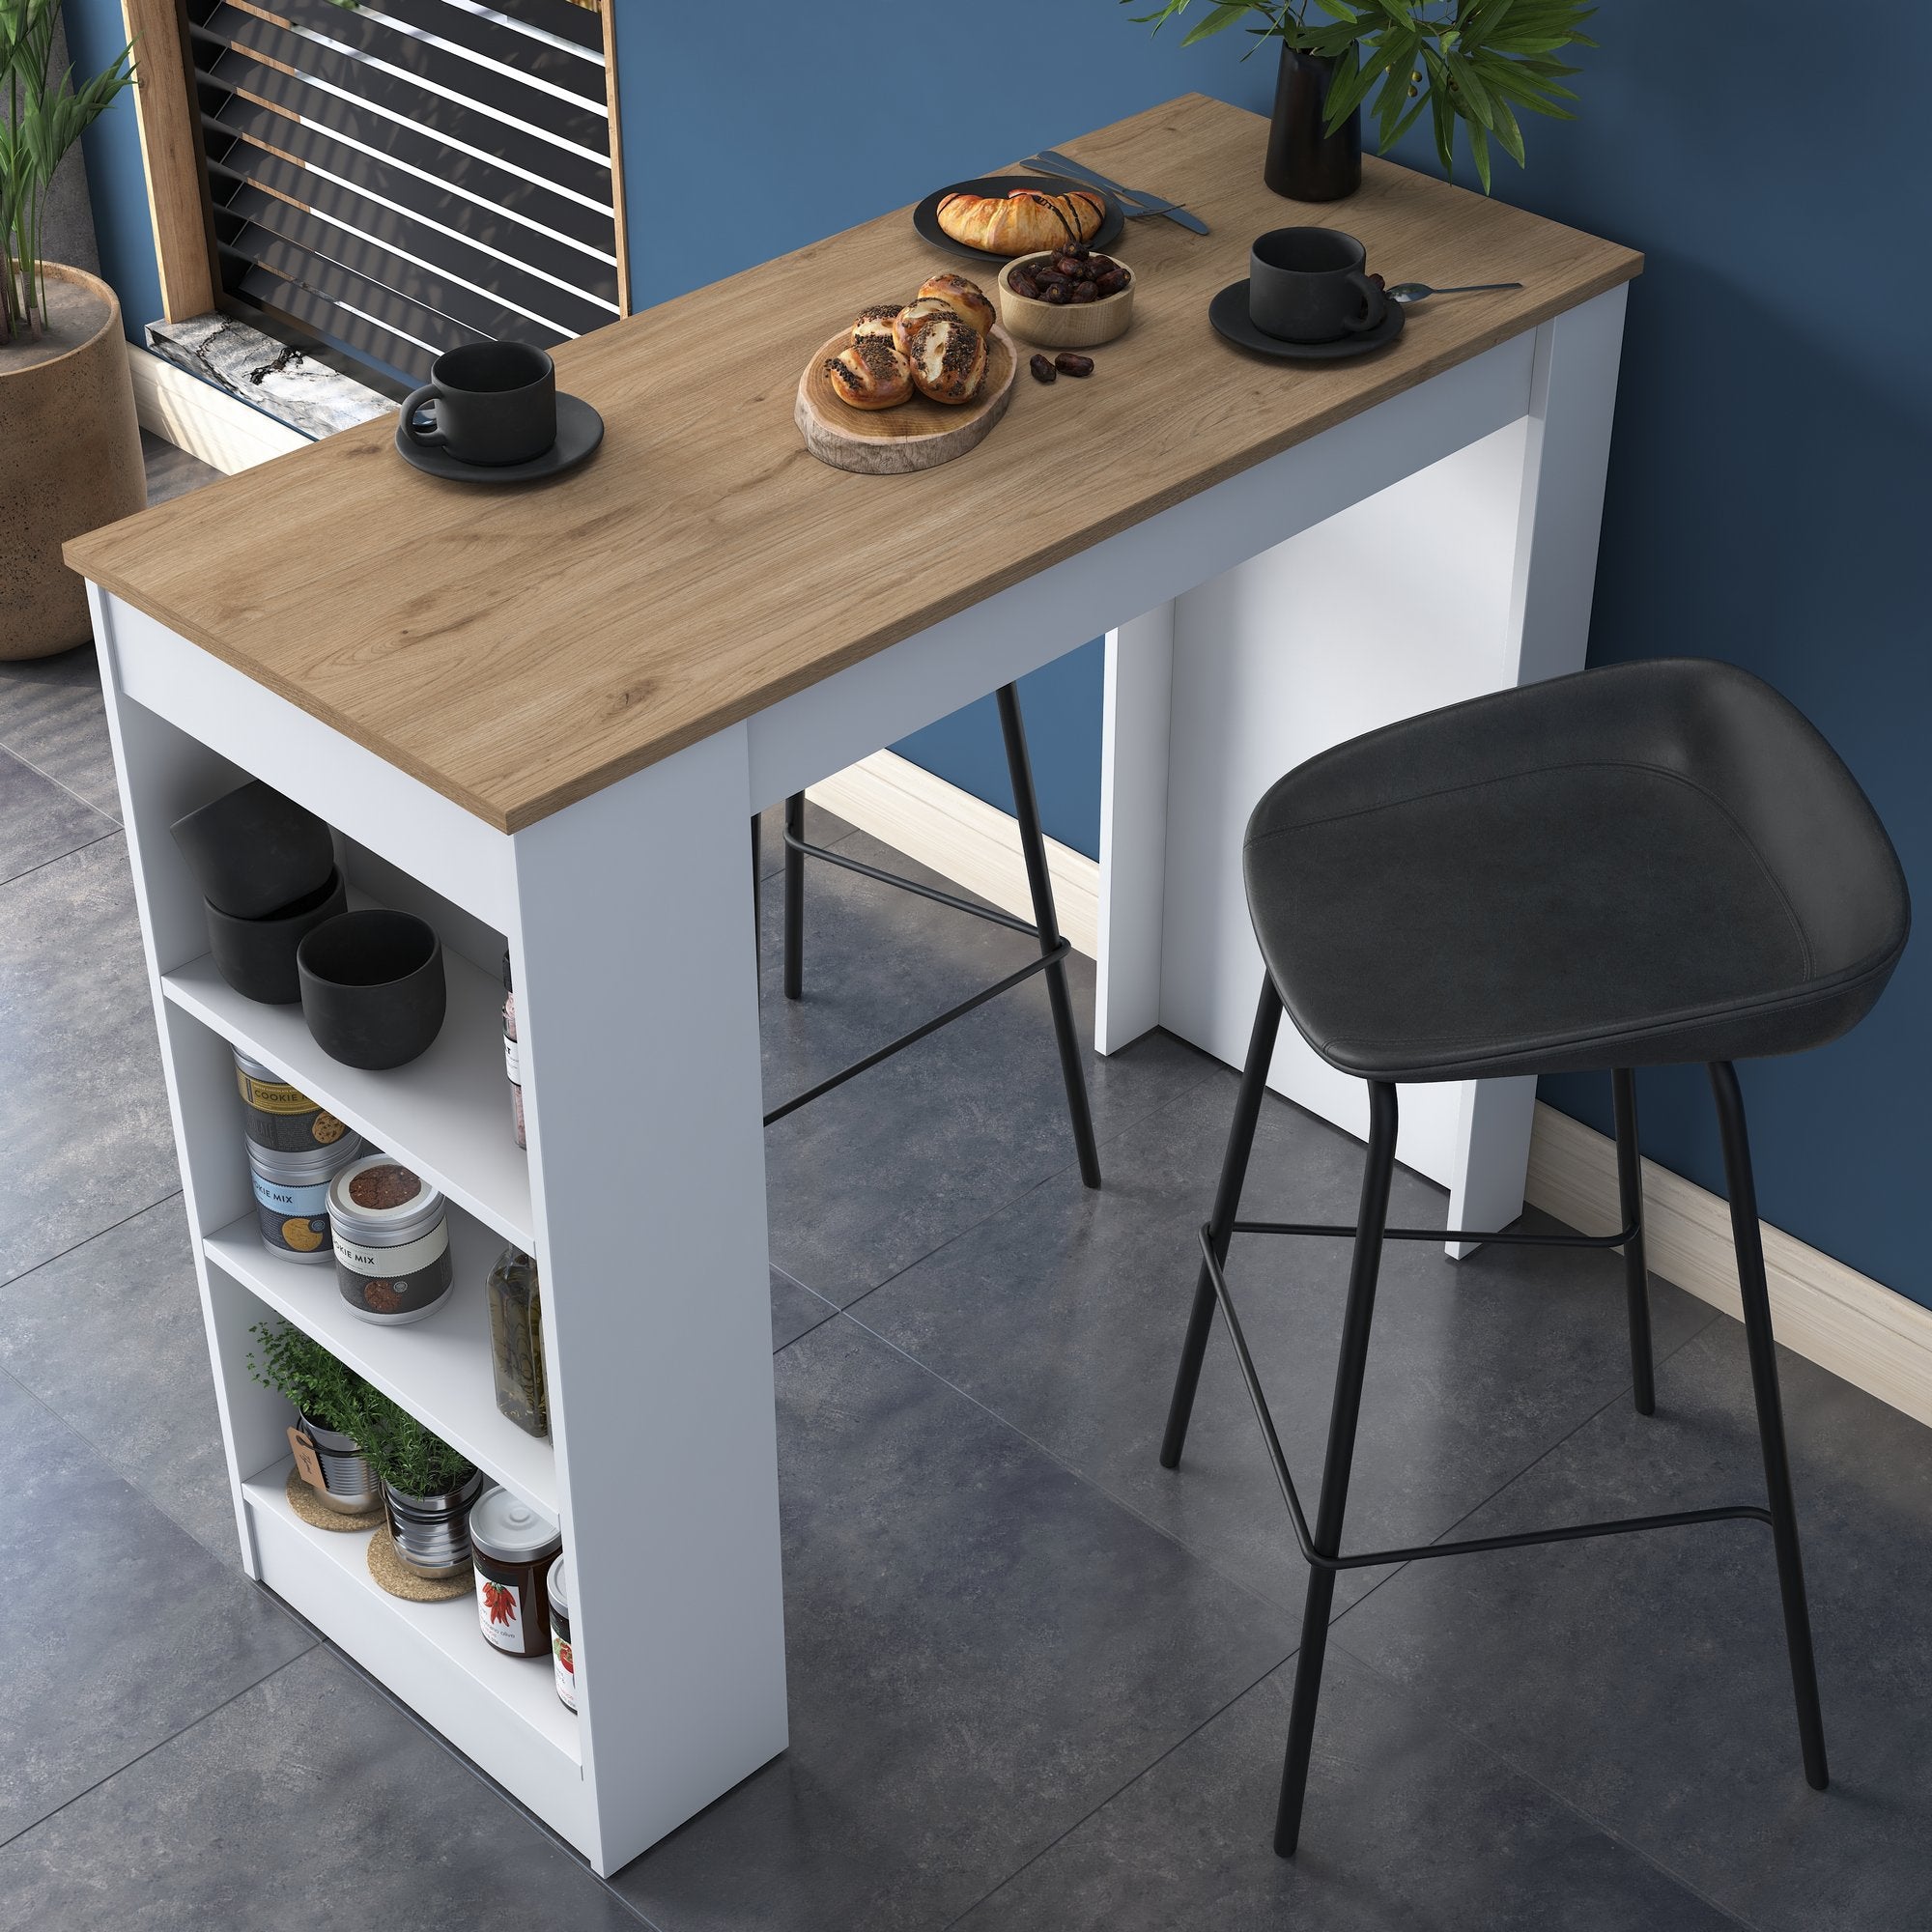 Tavolo alto da cucina snack bar in legno con scaffale laterale – Colly Shop